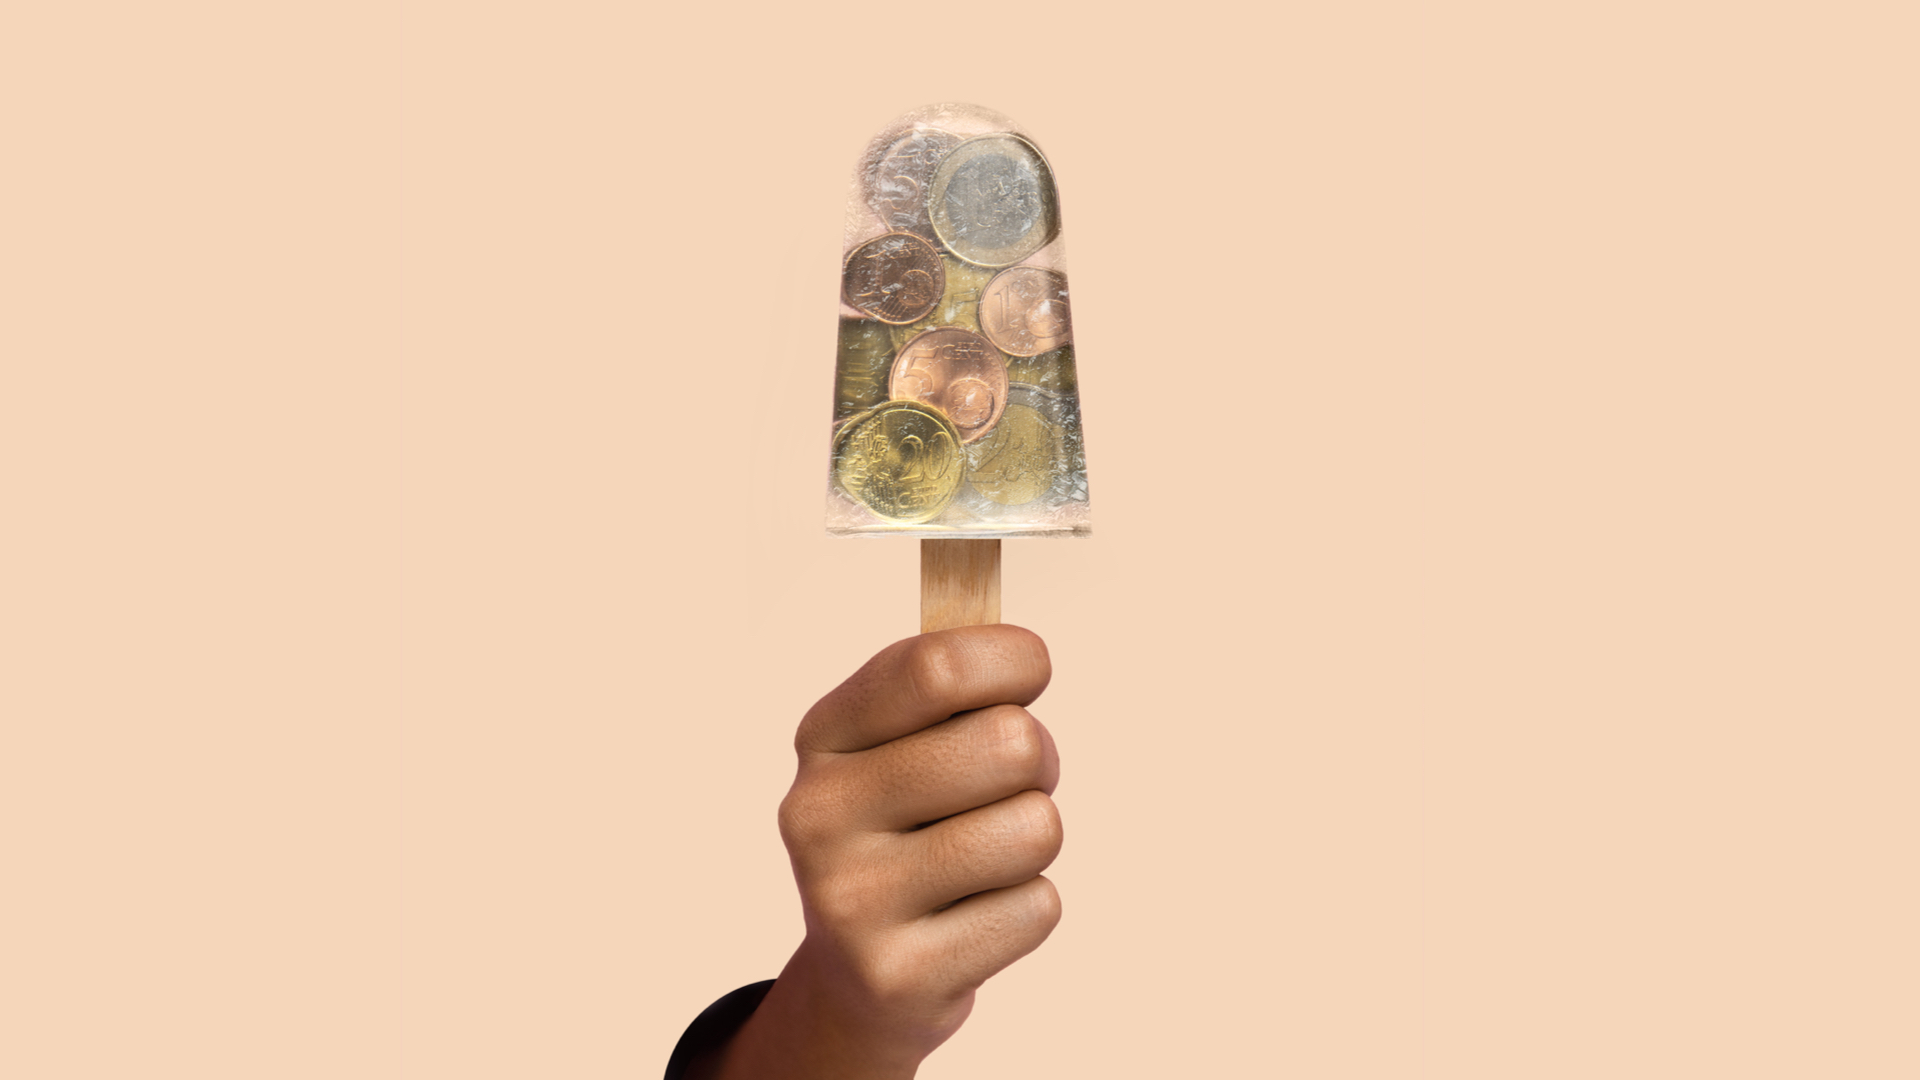 N26 - Prensa - Imagen de nuestra campaña “26 razones” con una mano sosteniendo un helado transparente con monedas dentro